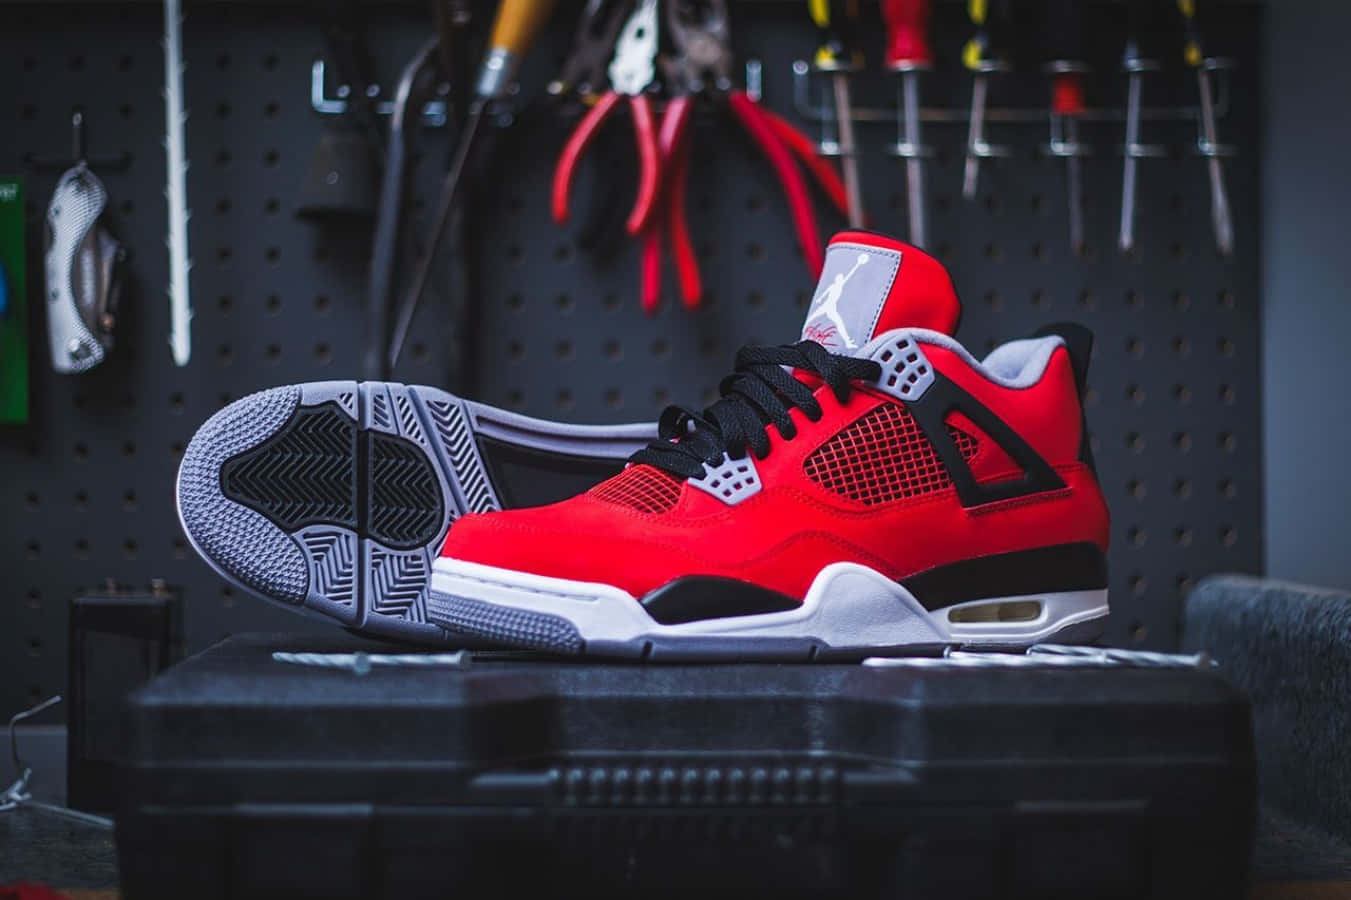 Air Jordan 4 Nike Retro Fire Red Wallpaper